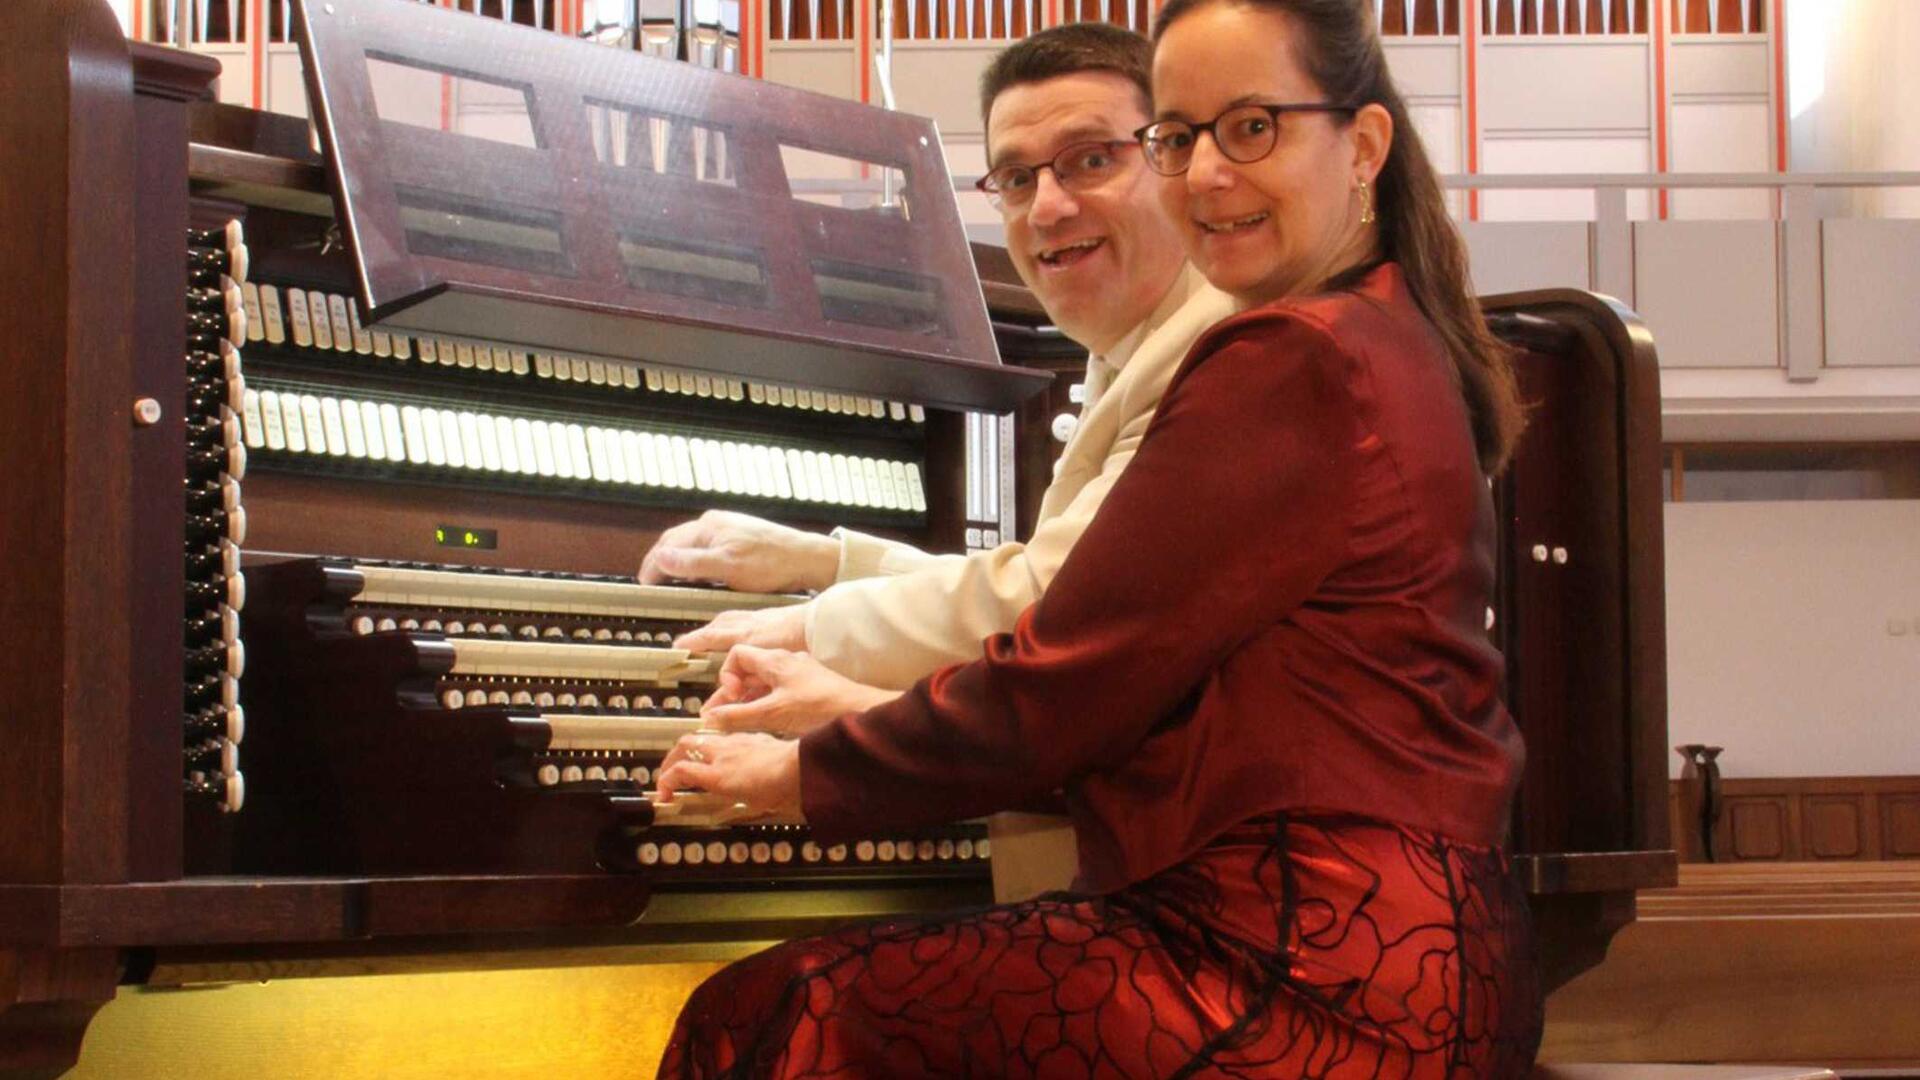 Am Donnerstag, 15. August, findet um 19.30 Uhr ein außergewöhnliches Orgelkonzert mit dem Orgel-Duo Iris und Carsten Lenz in der St. Lamberti-Kirche Selsingen statt.